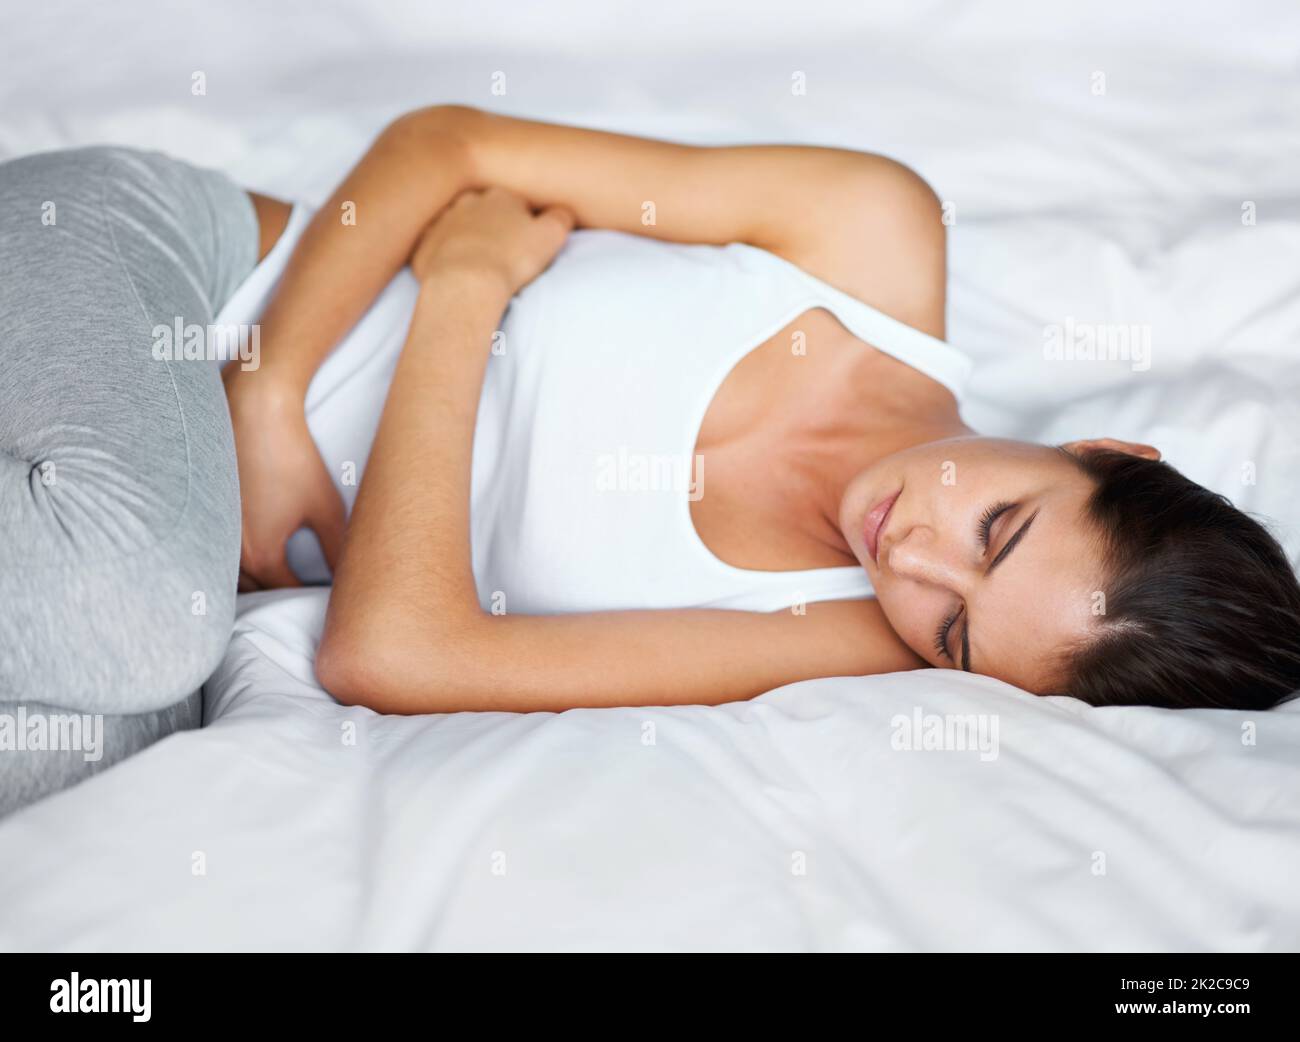 Fühlt sich nicht so toll an. Eine junge Frau, die mit Krämpfen im Bett liegt. Stockfoto